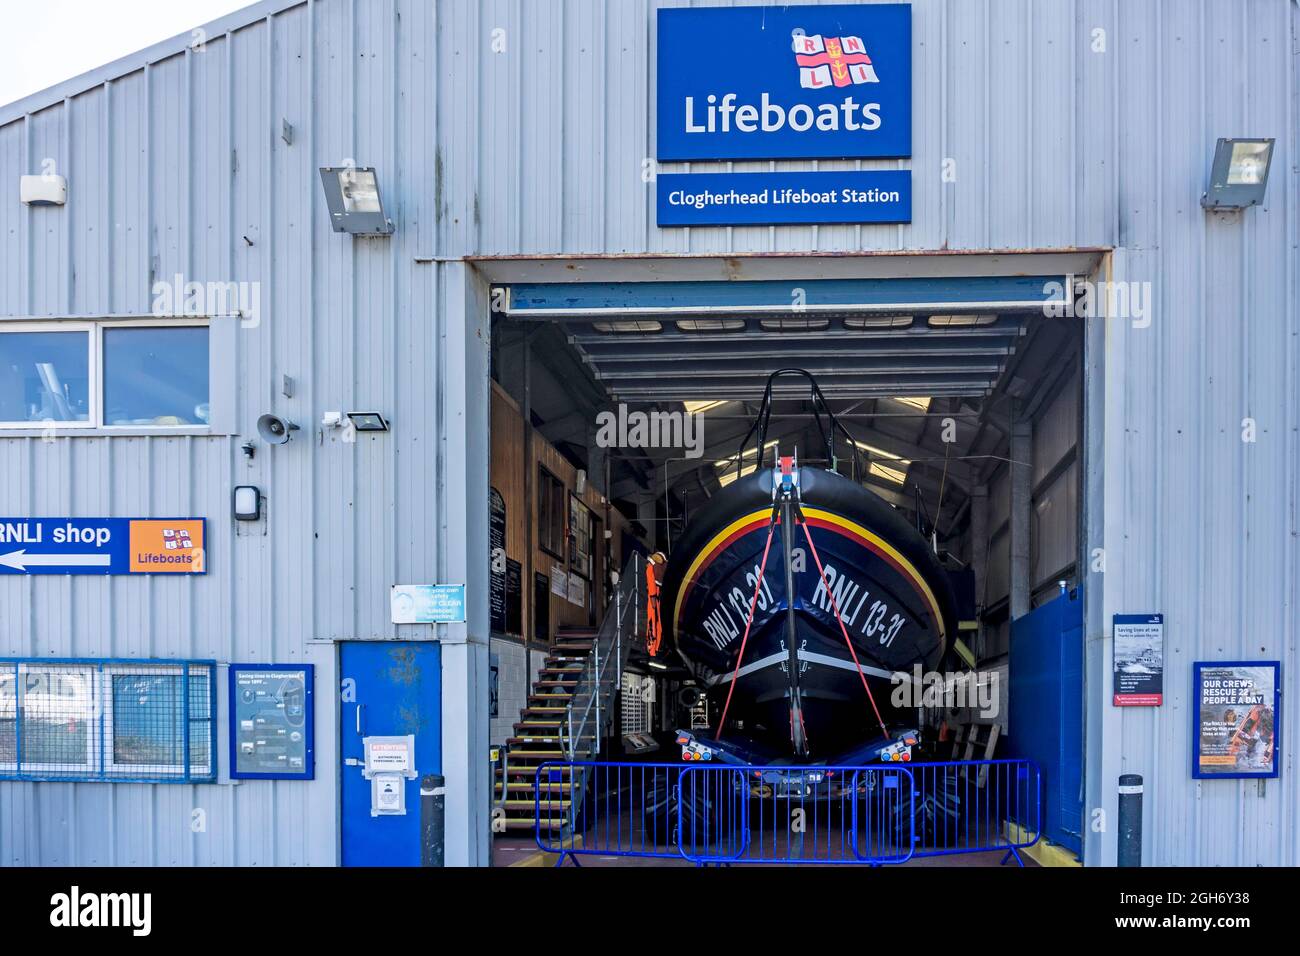 Stazione di Clogherhead Lifeboat a Clogherhead, County Louth, Irlanda. Foto Stock